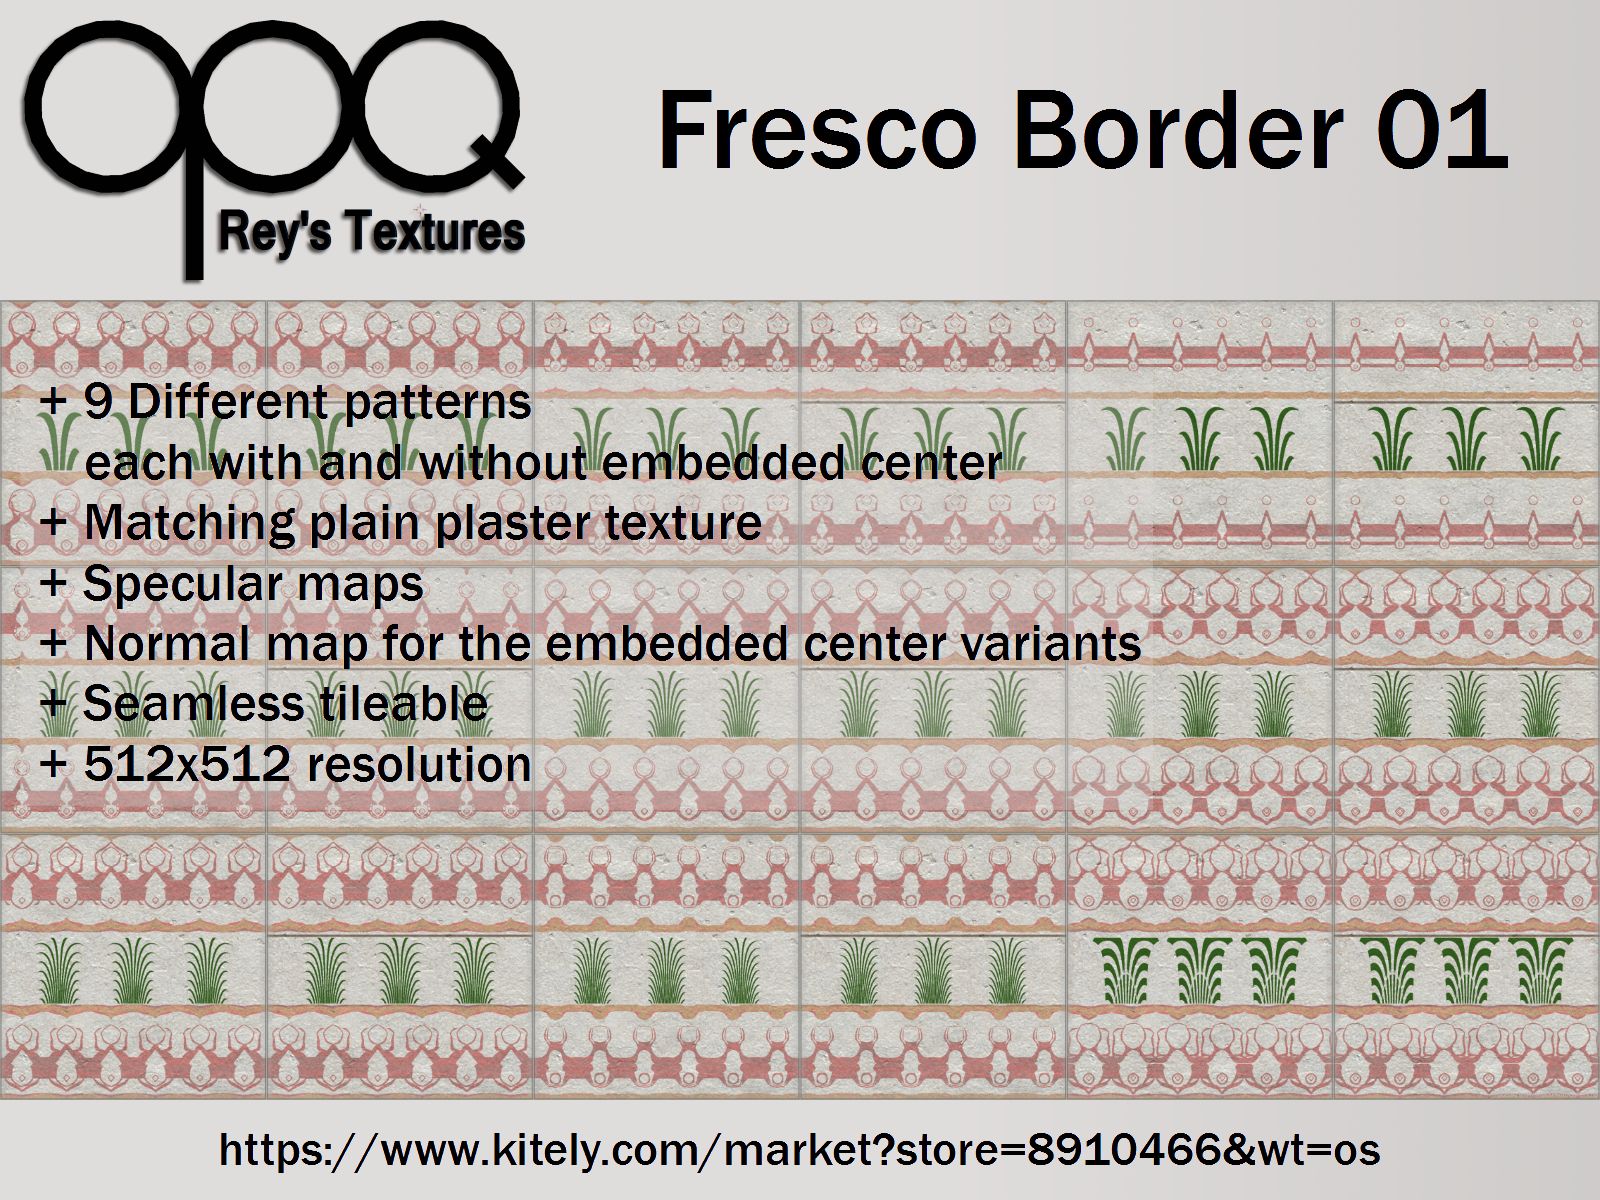 Rey's Fresco Border 01 Poster Kitely.jpg